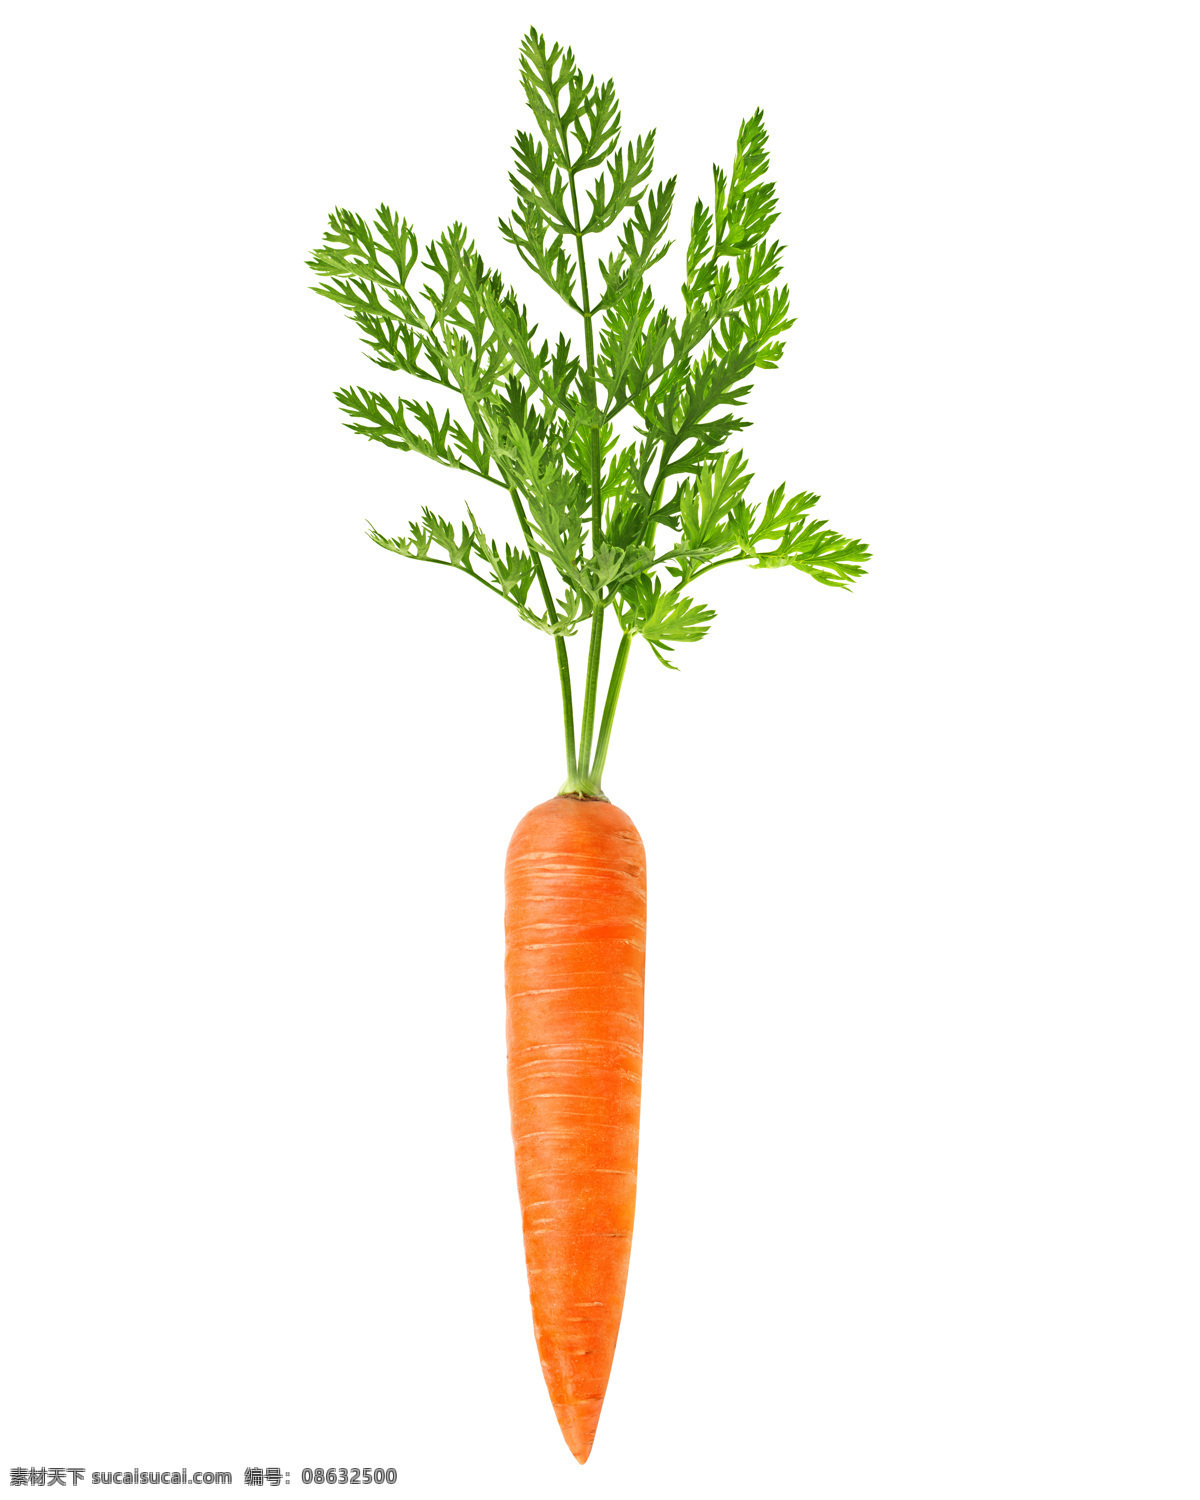 胡萝卜 红萝卜 非白萝卜 新鲜蔬菜 超市蔬菜 胡萝卜特写 食物原料 餐饮美食